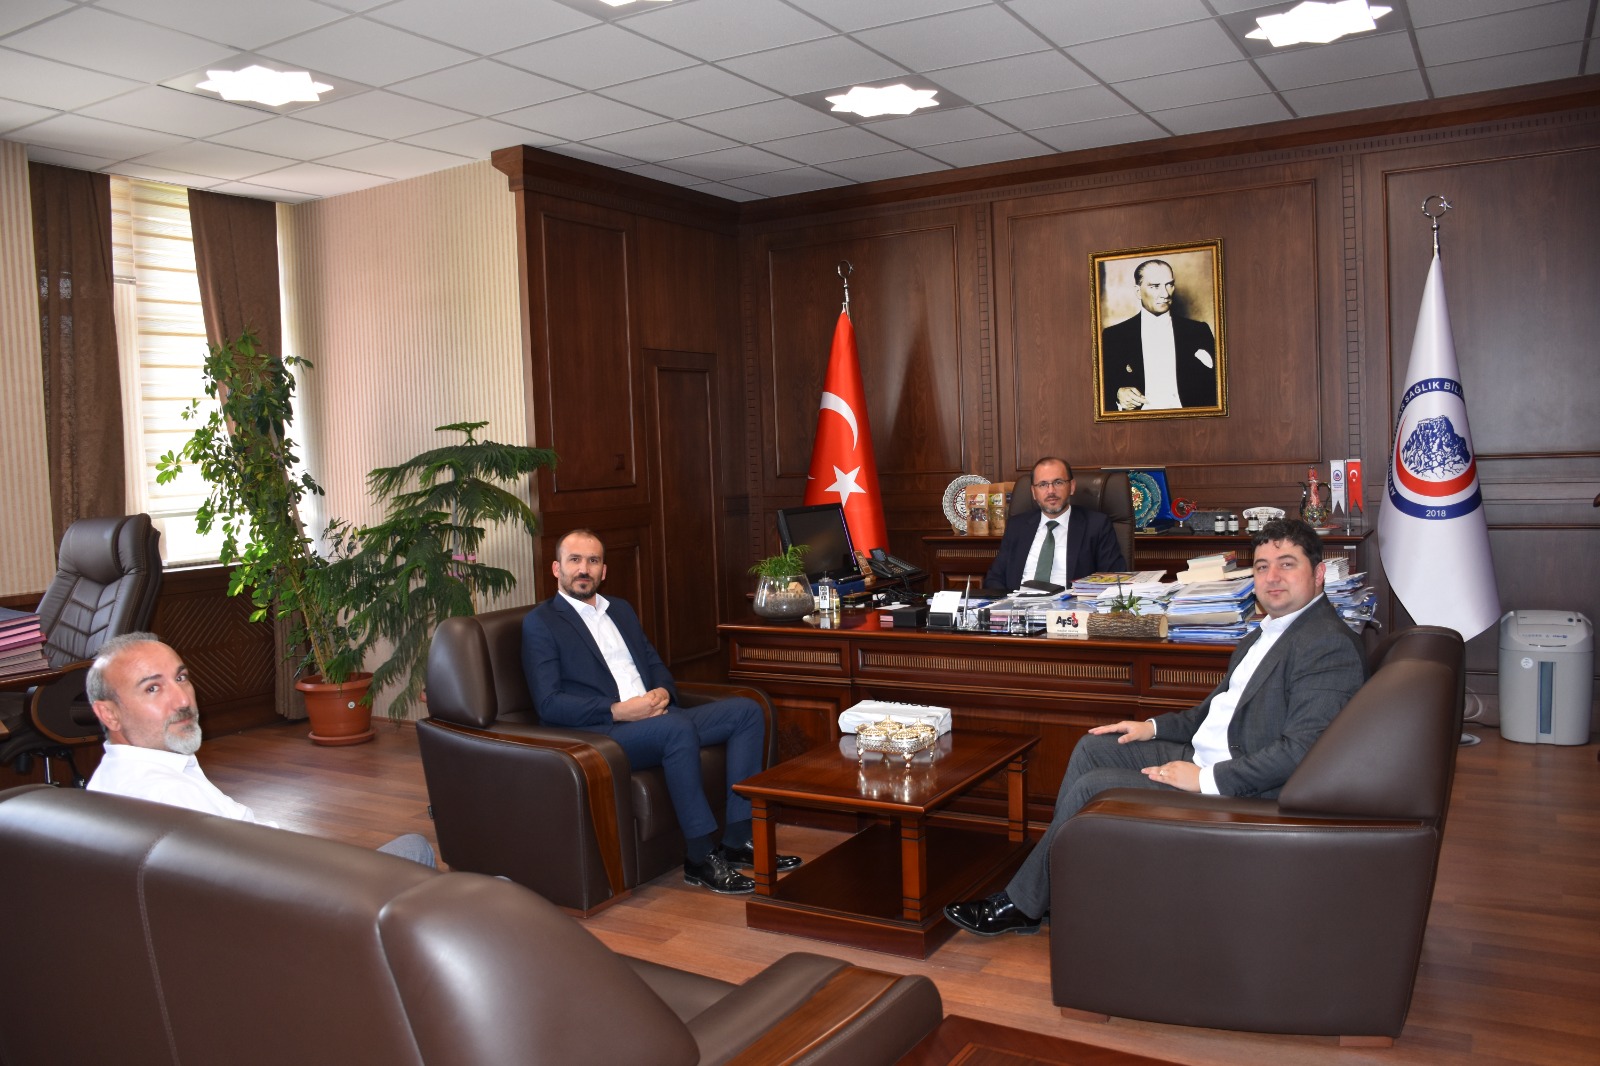 AFSU Rector, Prof. Dr. Visit to Nurullah Okumuş